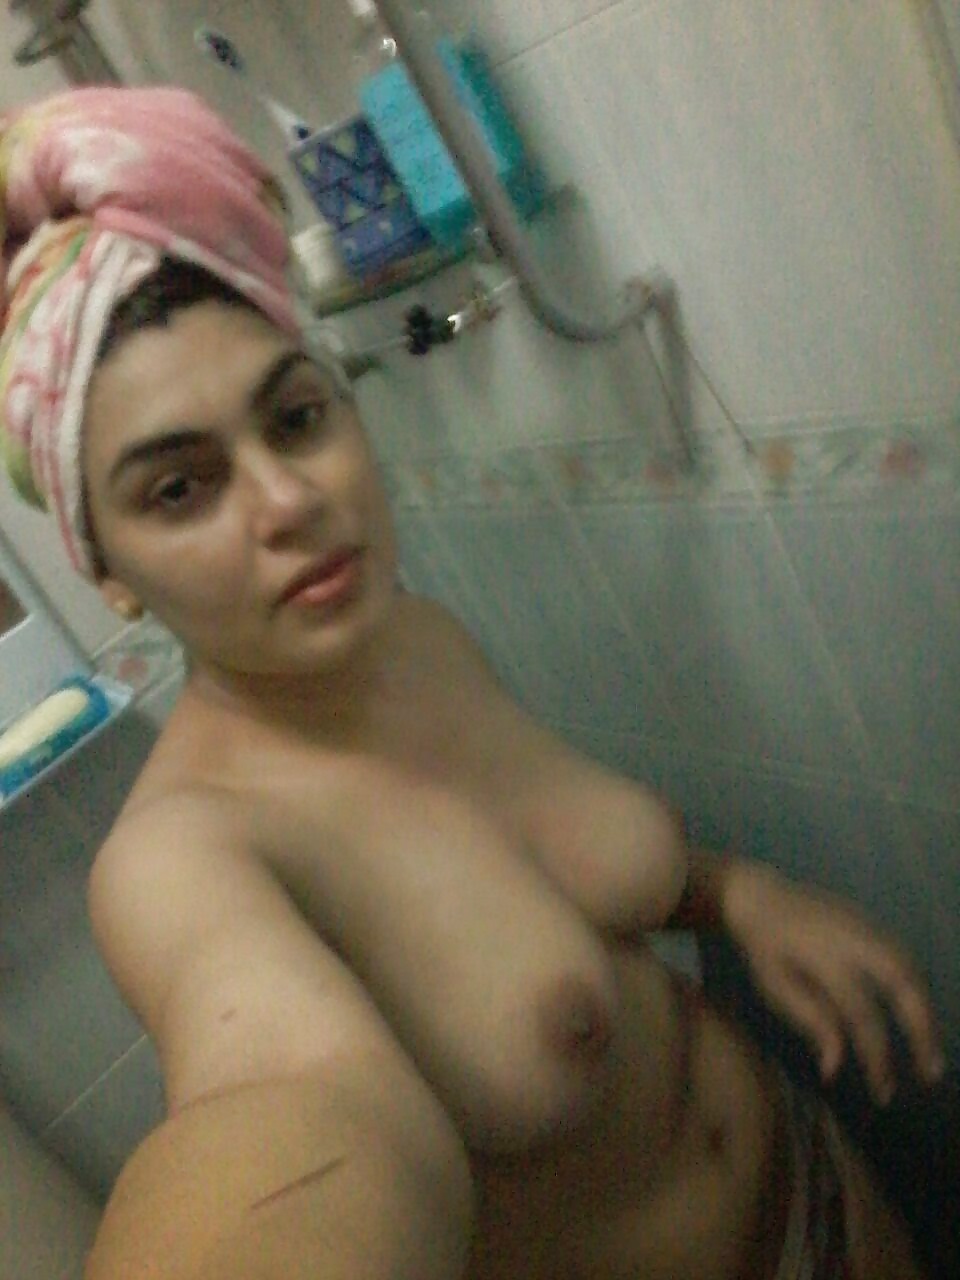 Iran Girl Nude Pic.